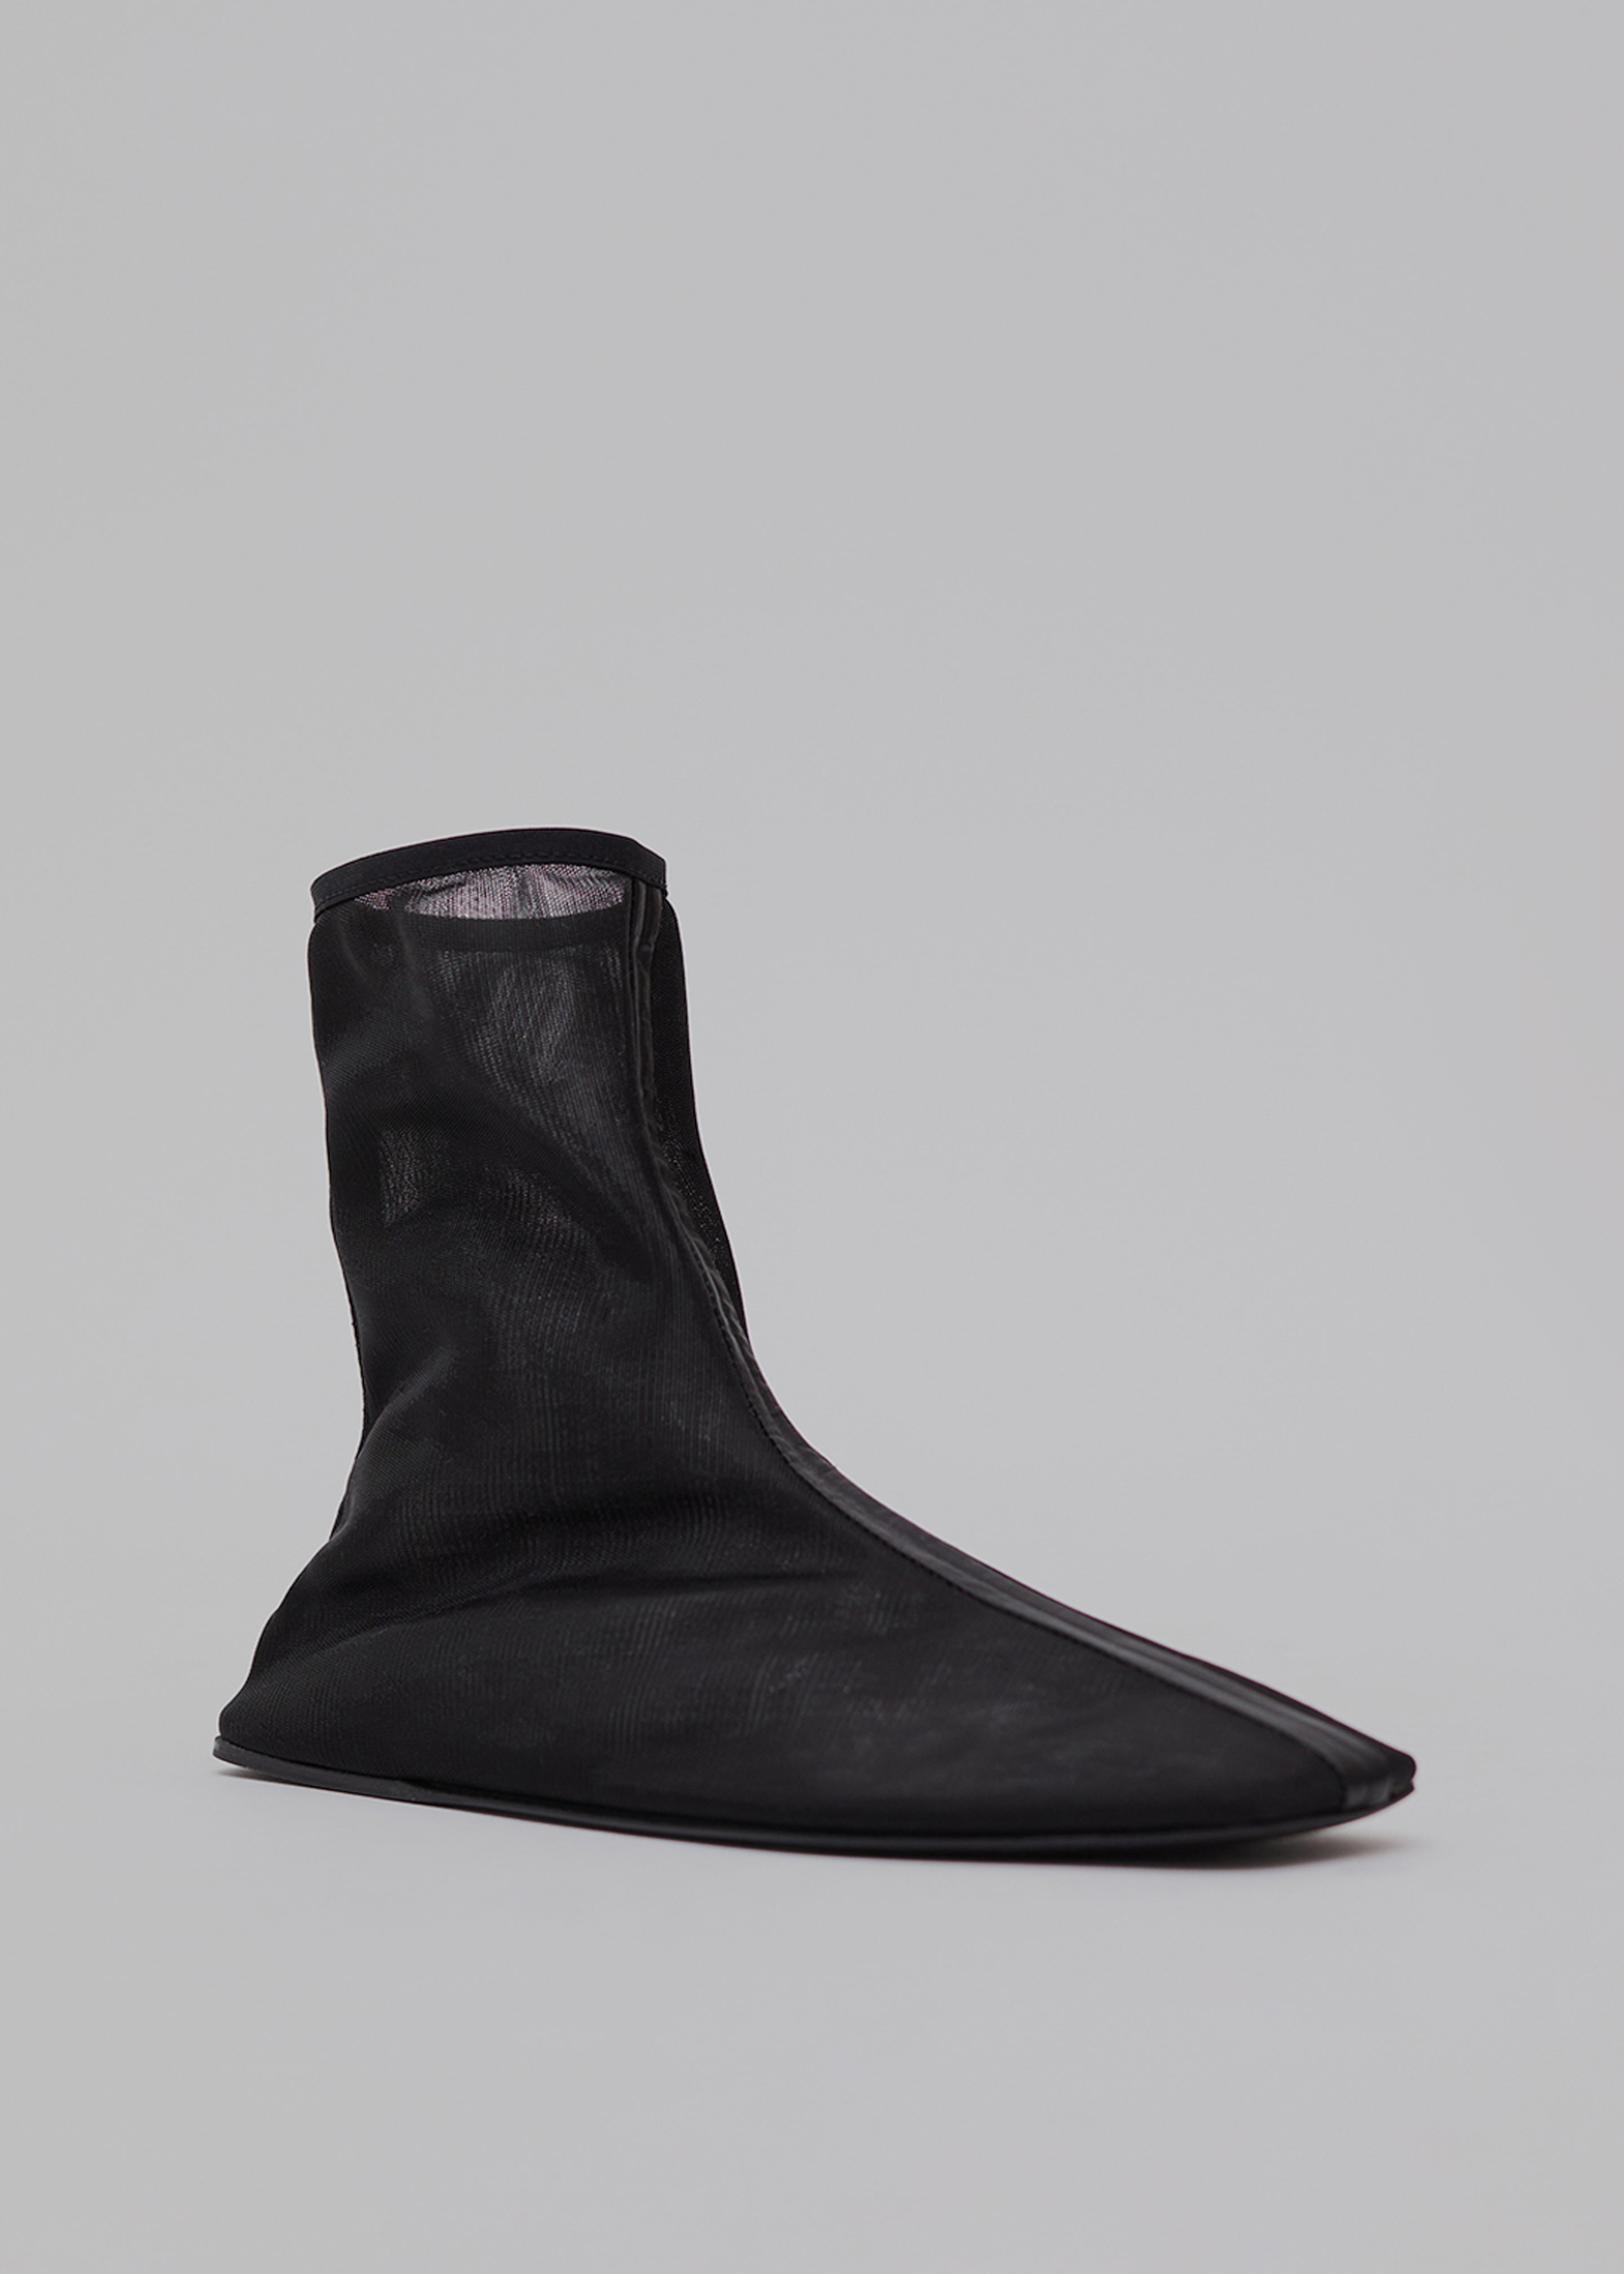 Christopher Esber Benson Ankle Boots - Black - 2